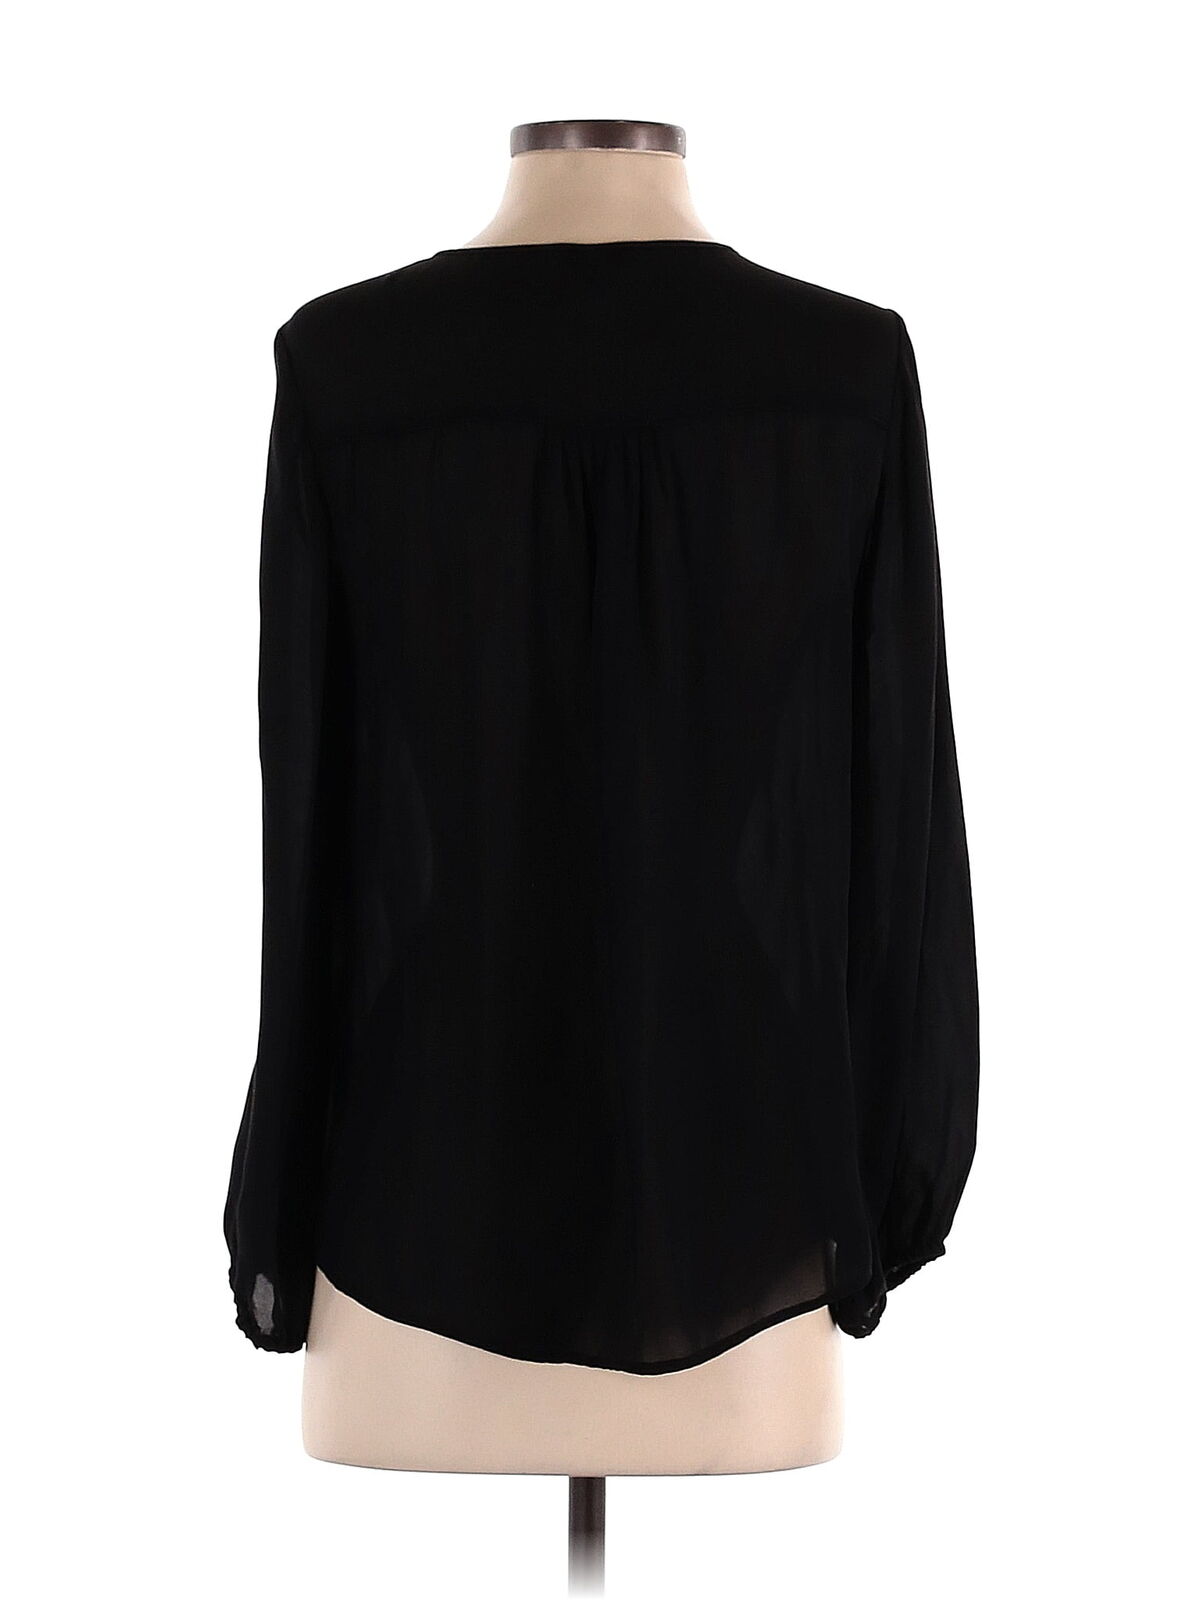 Joie Women Black Long Sleeve Silk Top XS - image 2